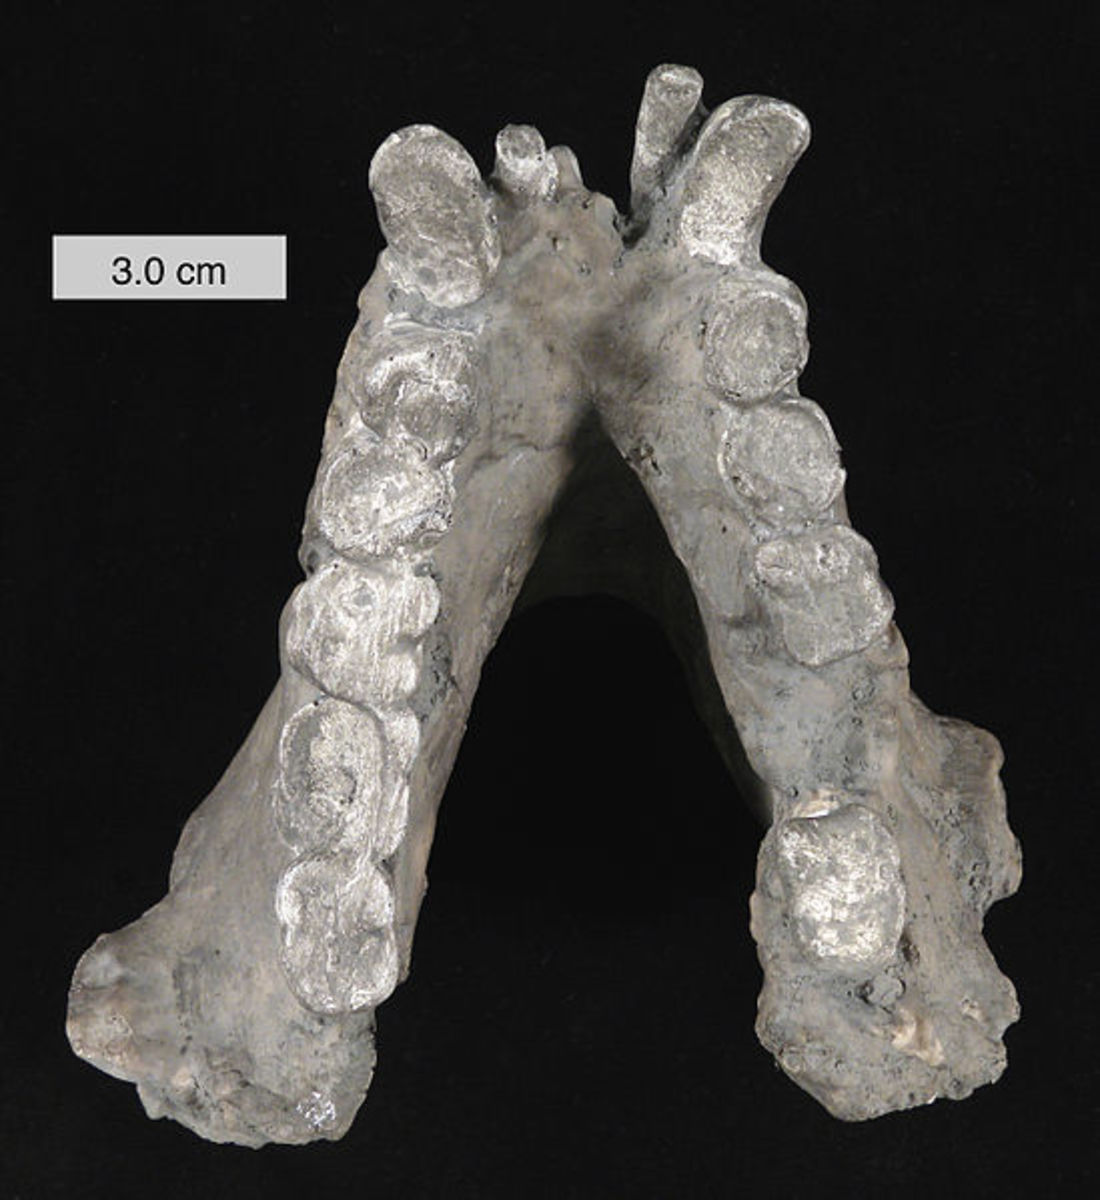 Gigantopithecus Blacki and the Bigfoot-Giganto Hypothesis